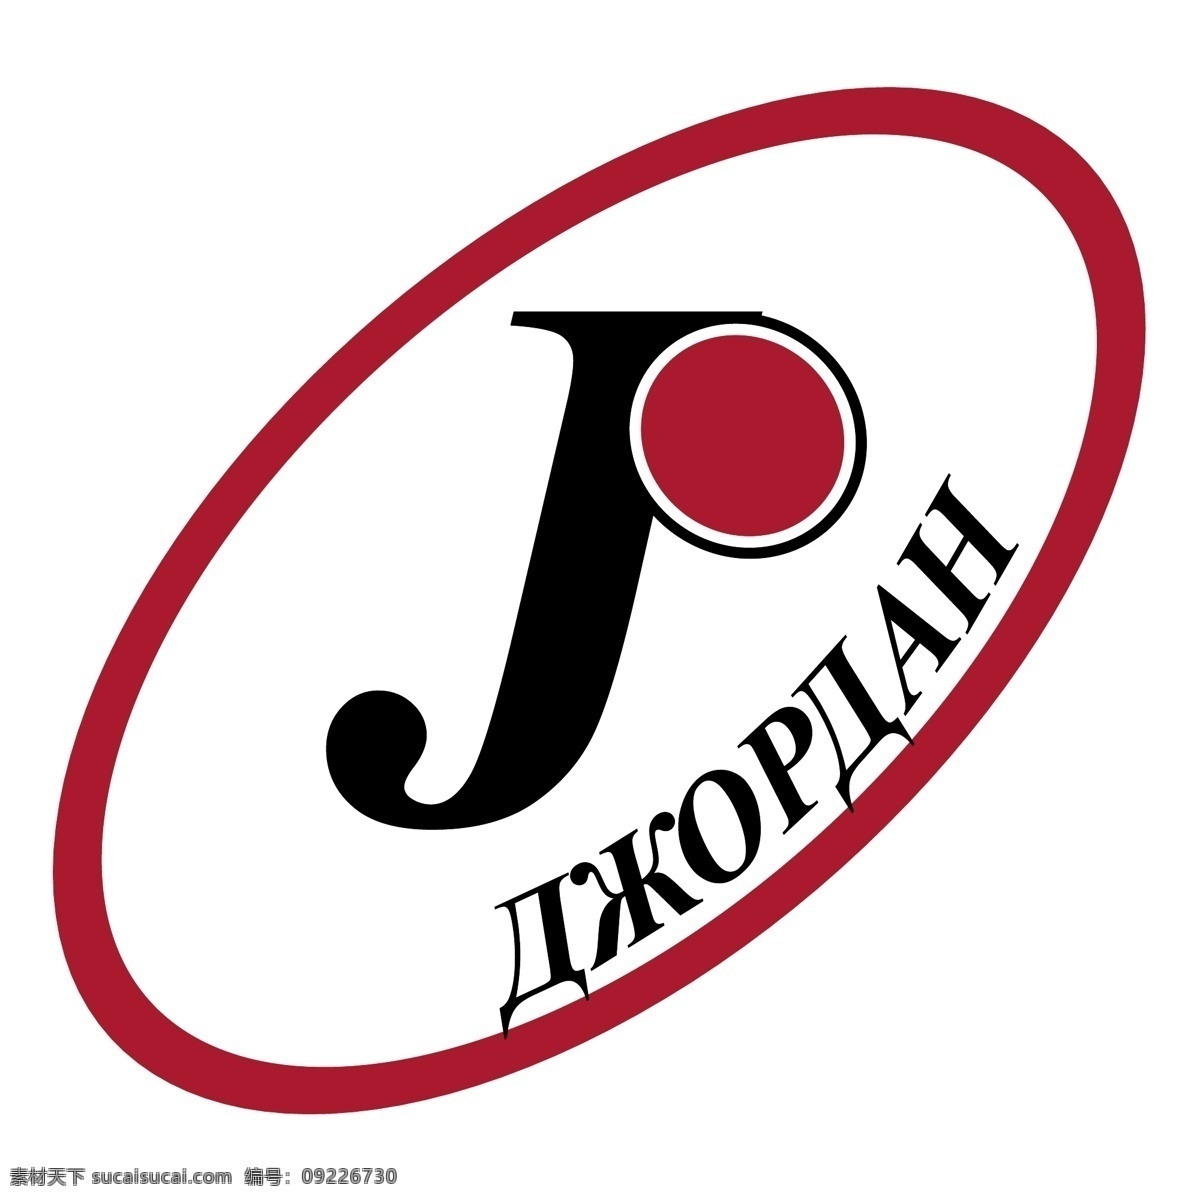 乔丹免费下载 乔丹 标志 标识为免费 psd源文件 logo设计